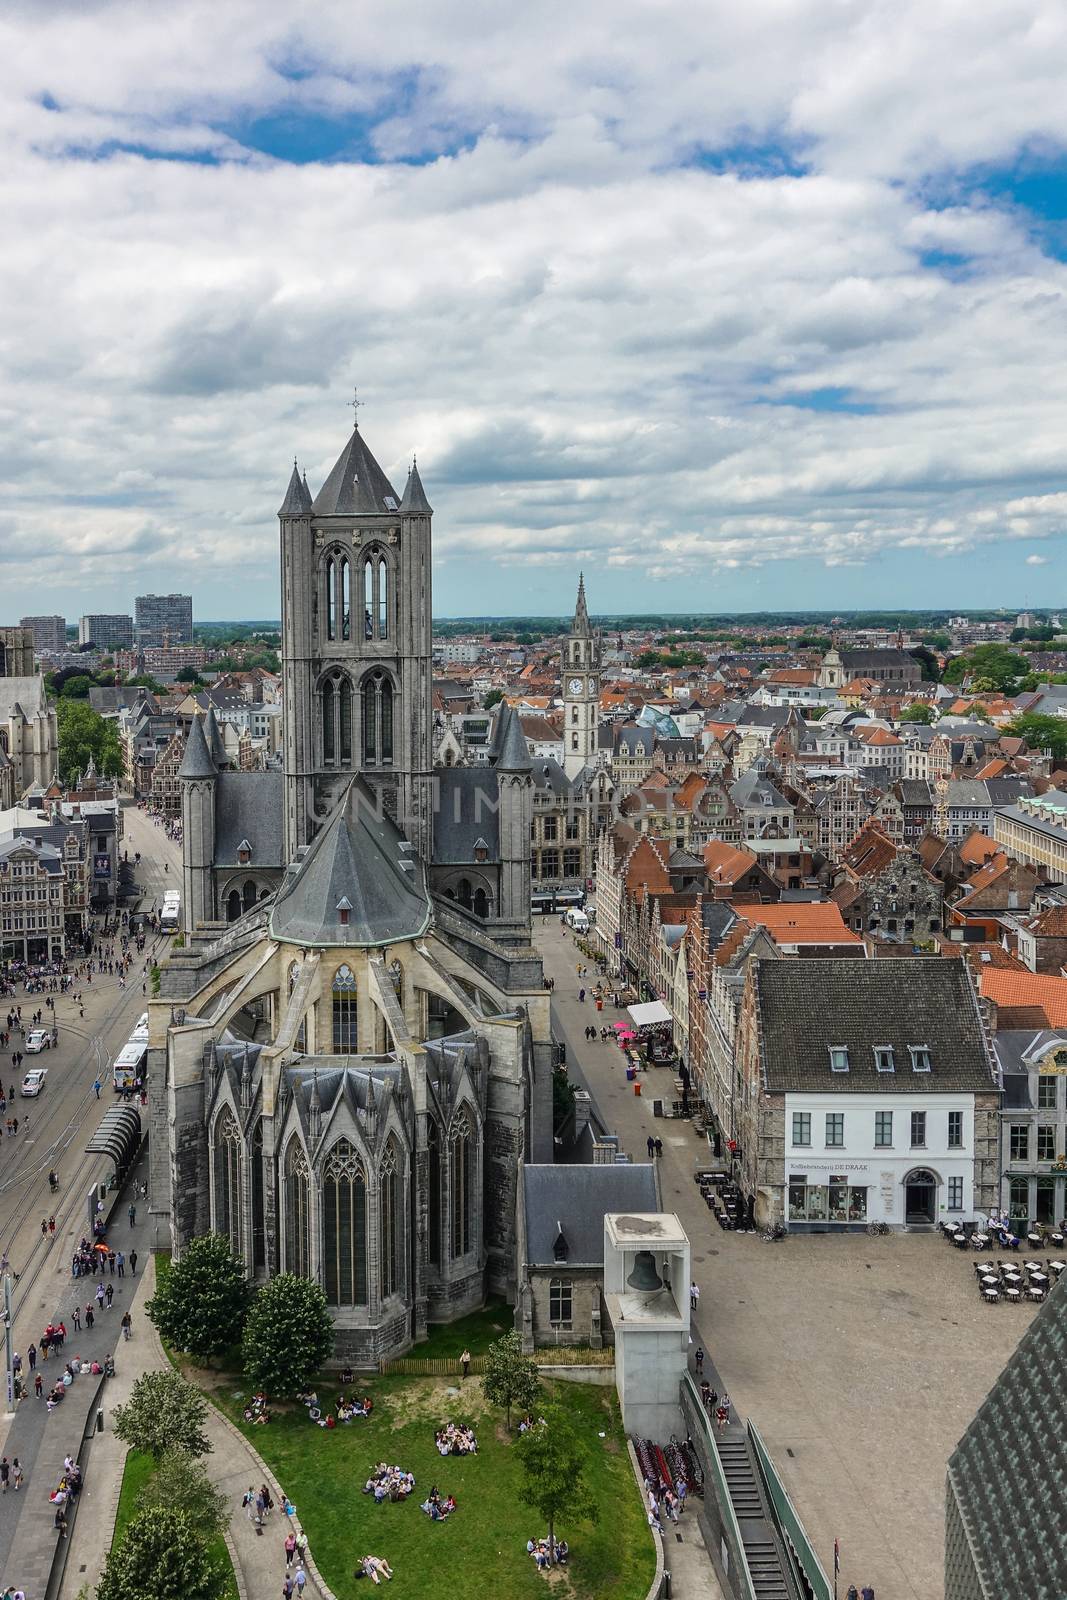 Sint Niklaas church in Gent, Flanders, Belgium. by Claudine